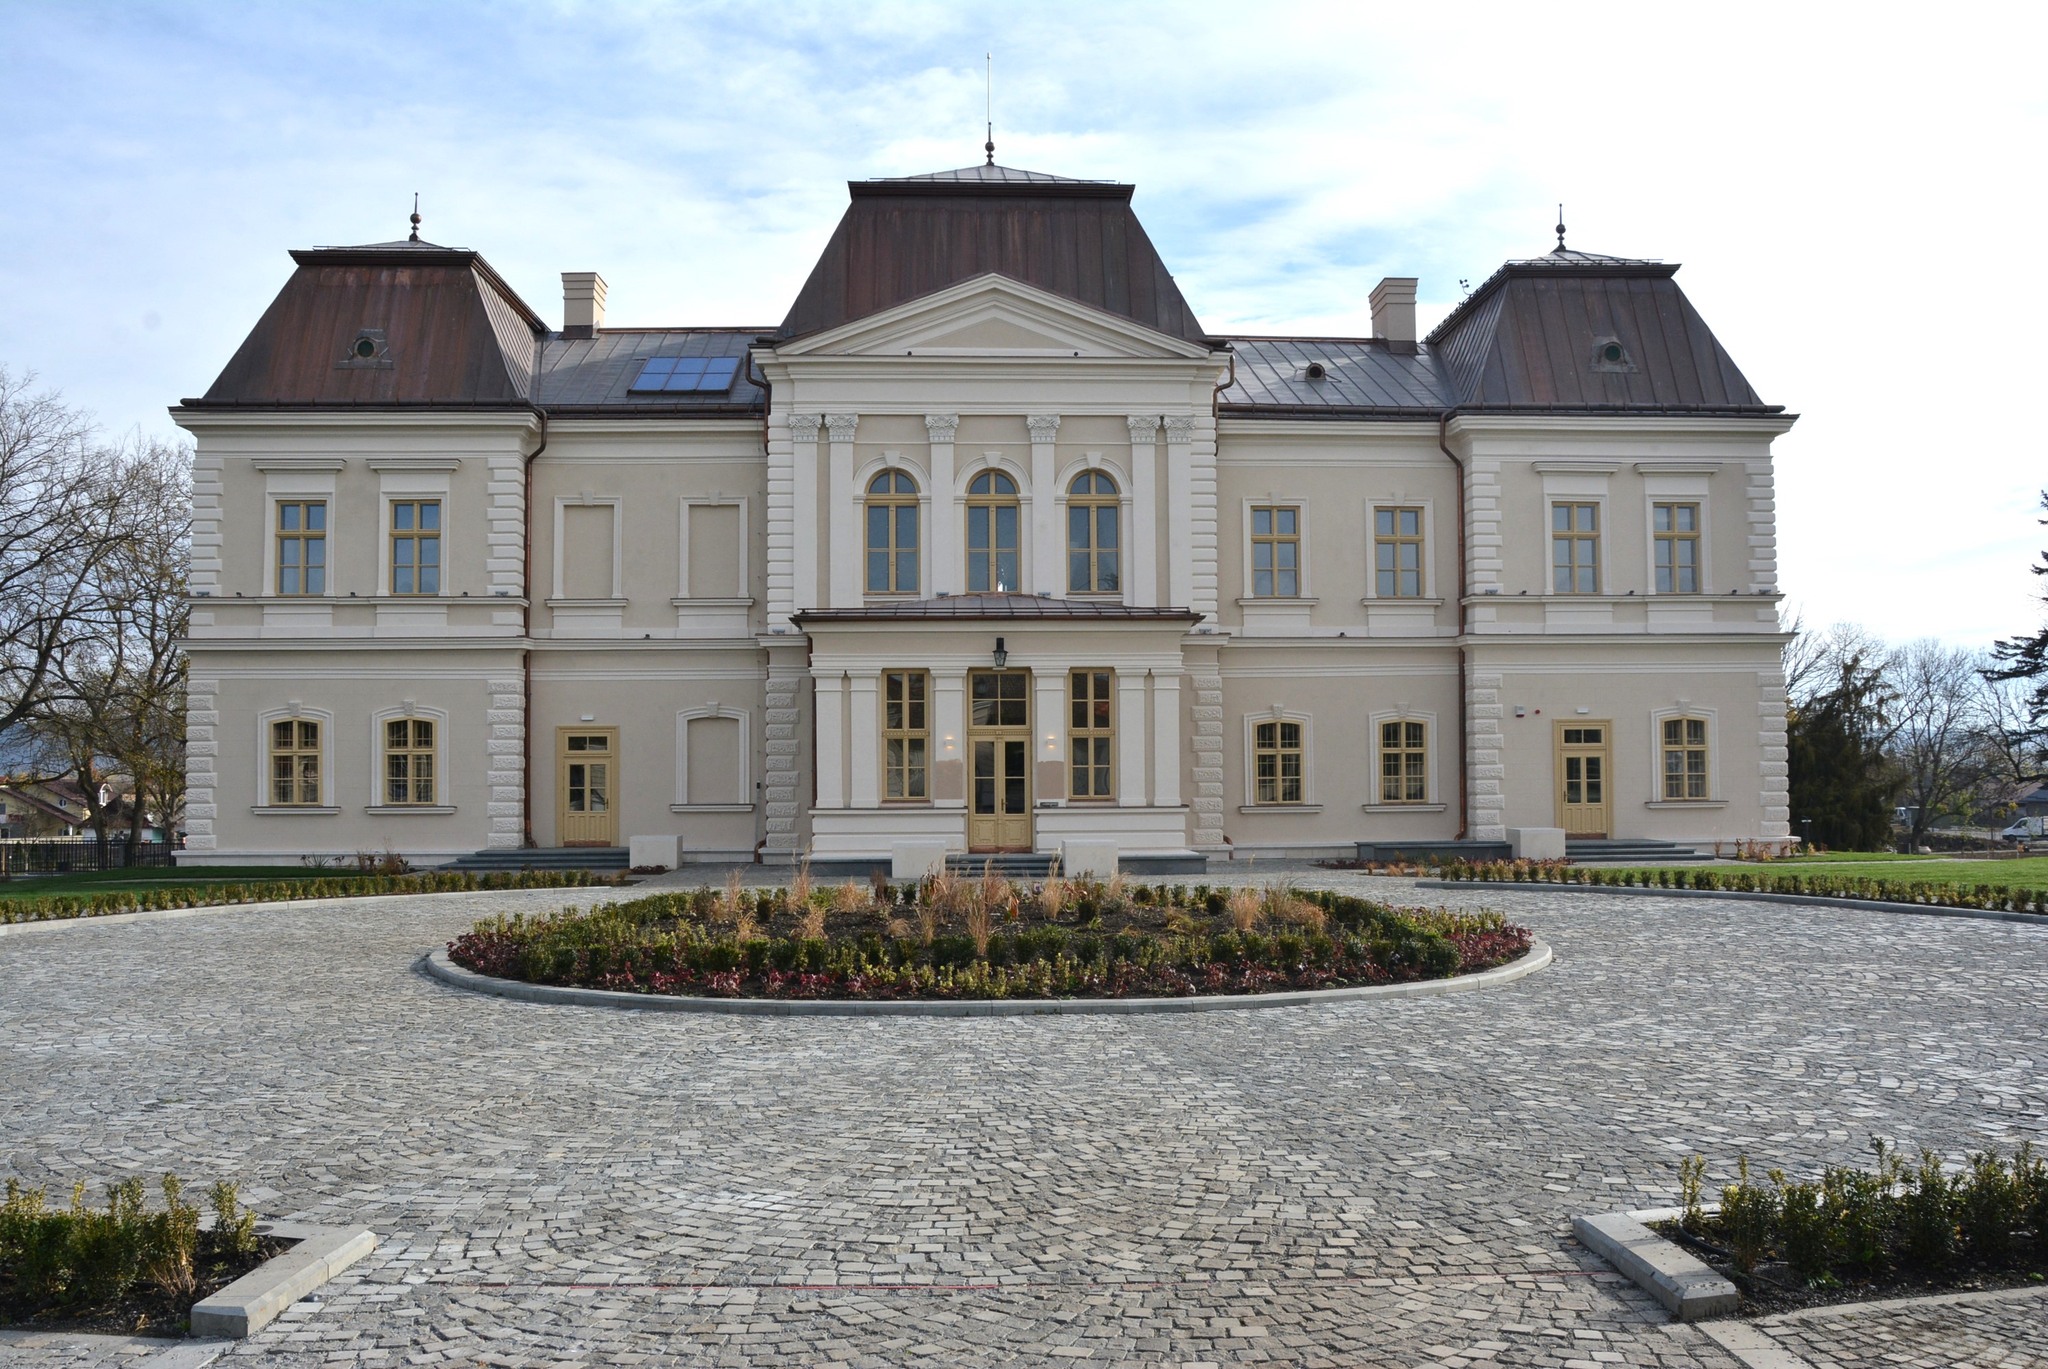 (Foto) Un nou obiectiv turistic în Cluj. Palatul Bánffy din Răscruci a fost restaurat și arată superb 3